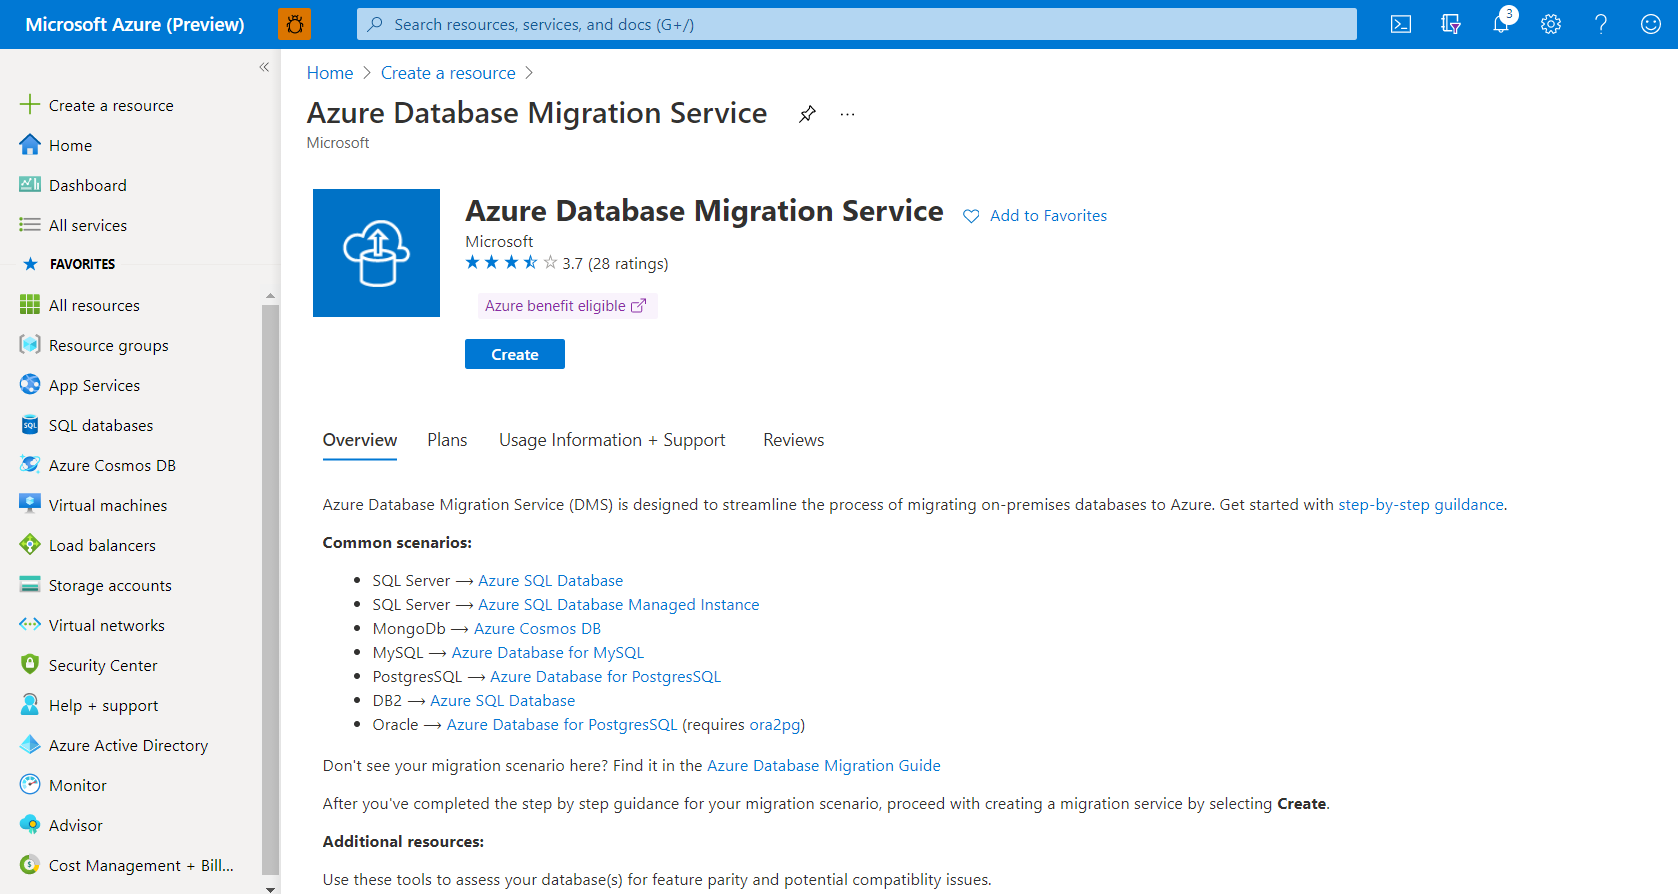 Captura de tela de uma instância do Serviço de Migração de Banco de Dados do Azure.